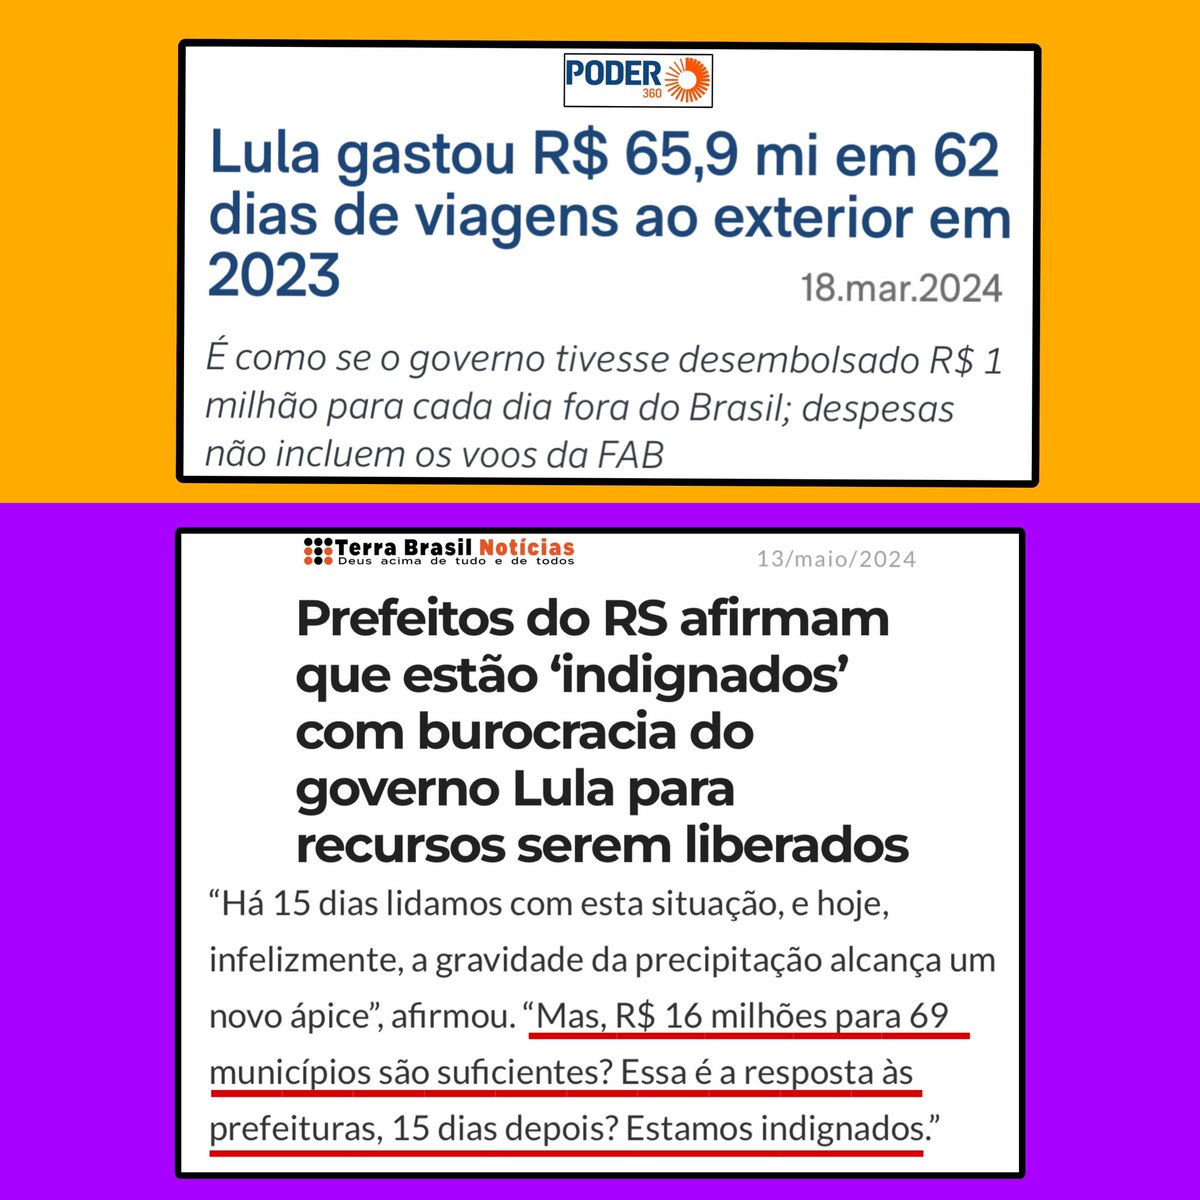 Lula gastou 4 vezes mais em viagens internacionais (só em 2023, não considerando 2024 e nem os gastos com os voos da FAB) do que envio de verba para prefeituras do RS.